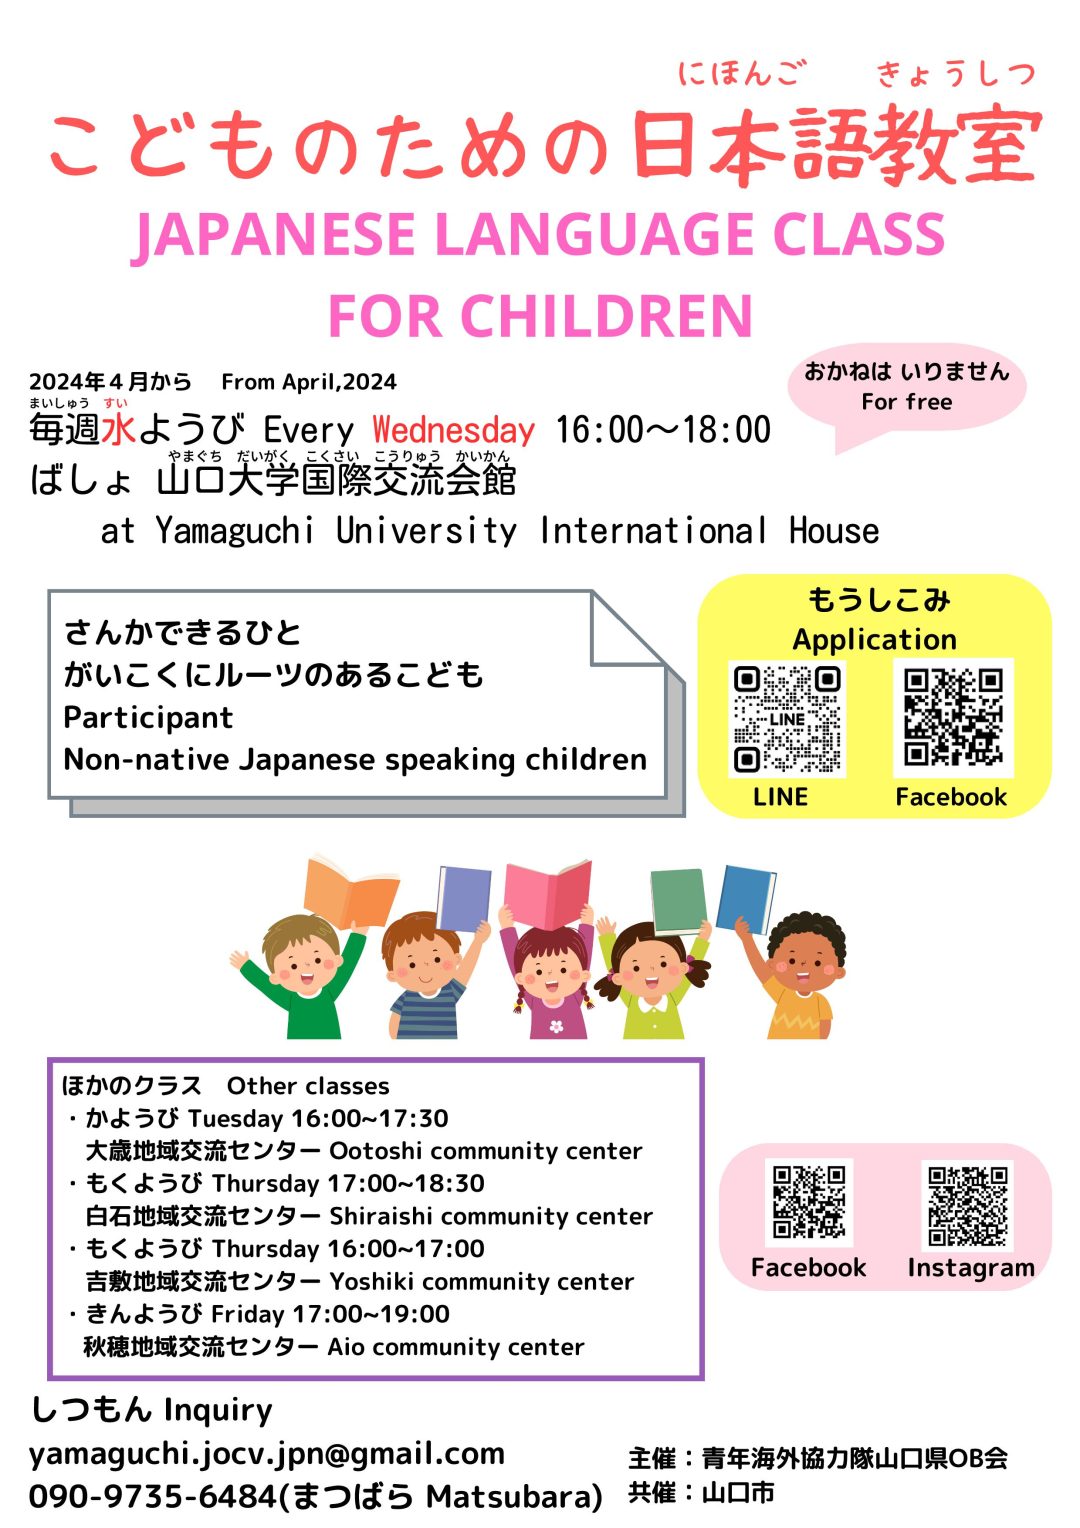 こどものための日本語教室(にほんごきょうしつ) / JAPANESE LANGUAGE 